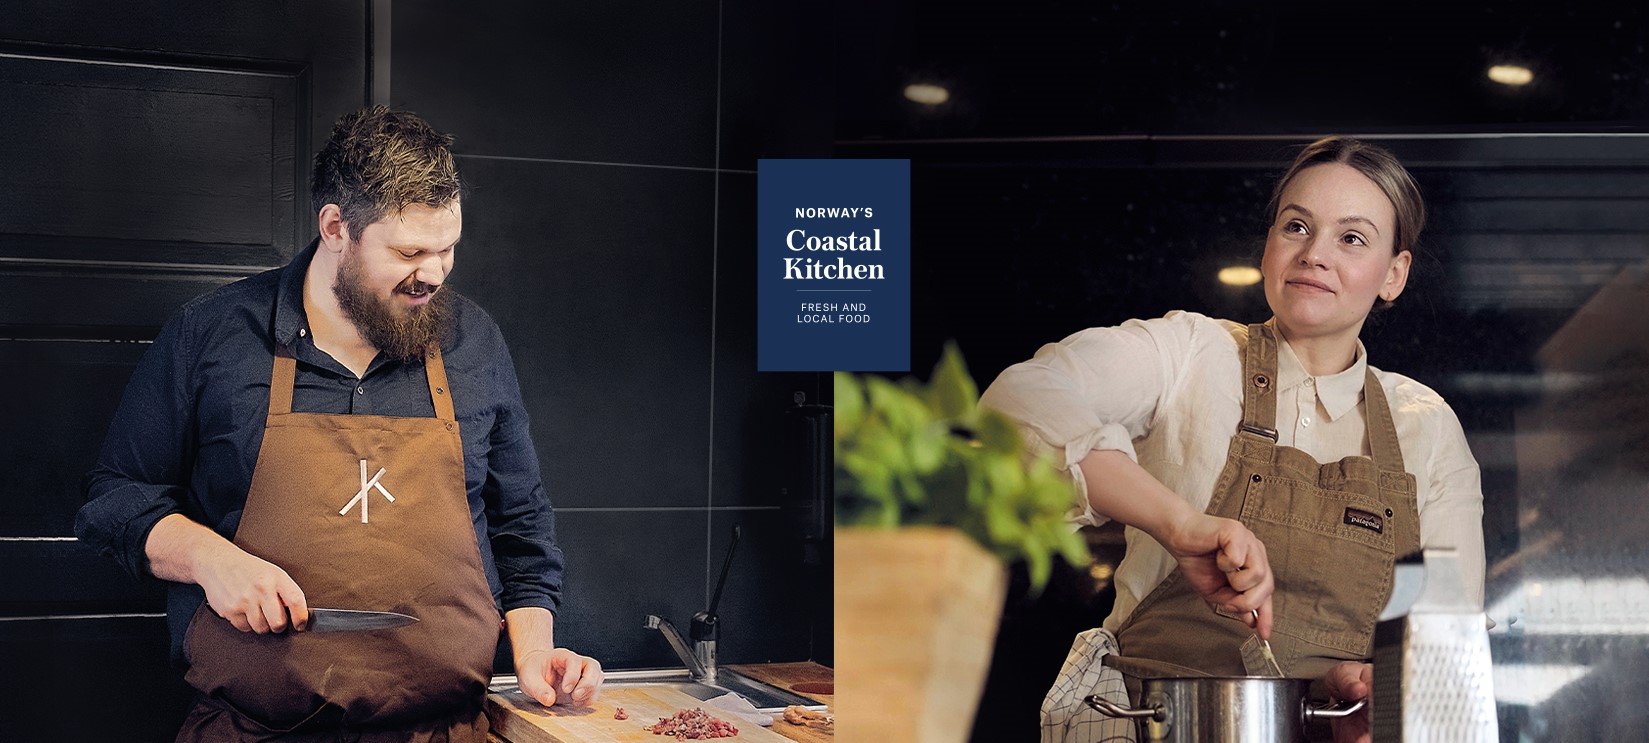 Våra två kulinariska ambassadörer Ellingsen och Nässander i sina kök.